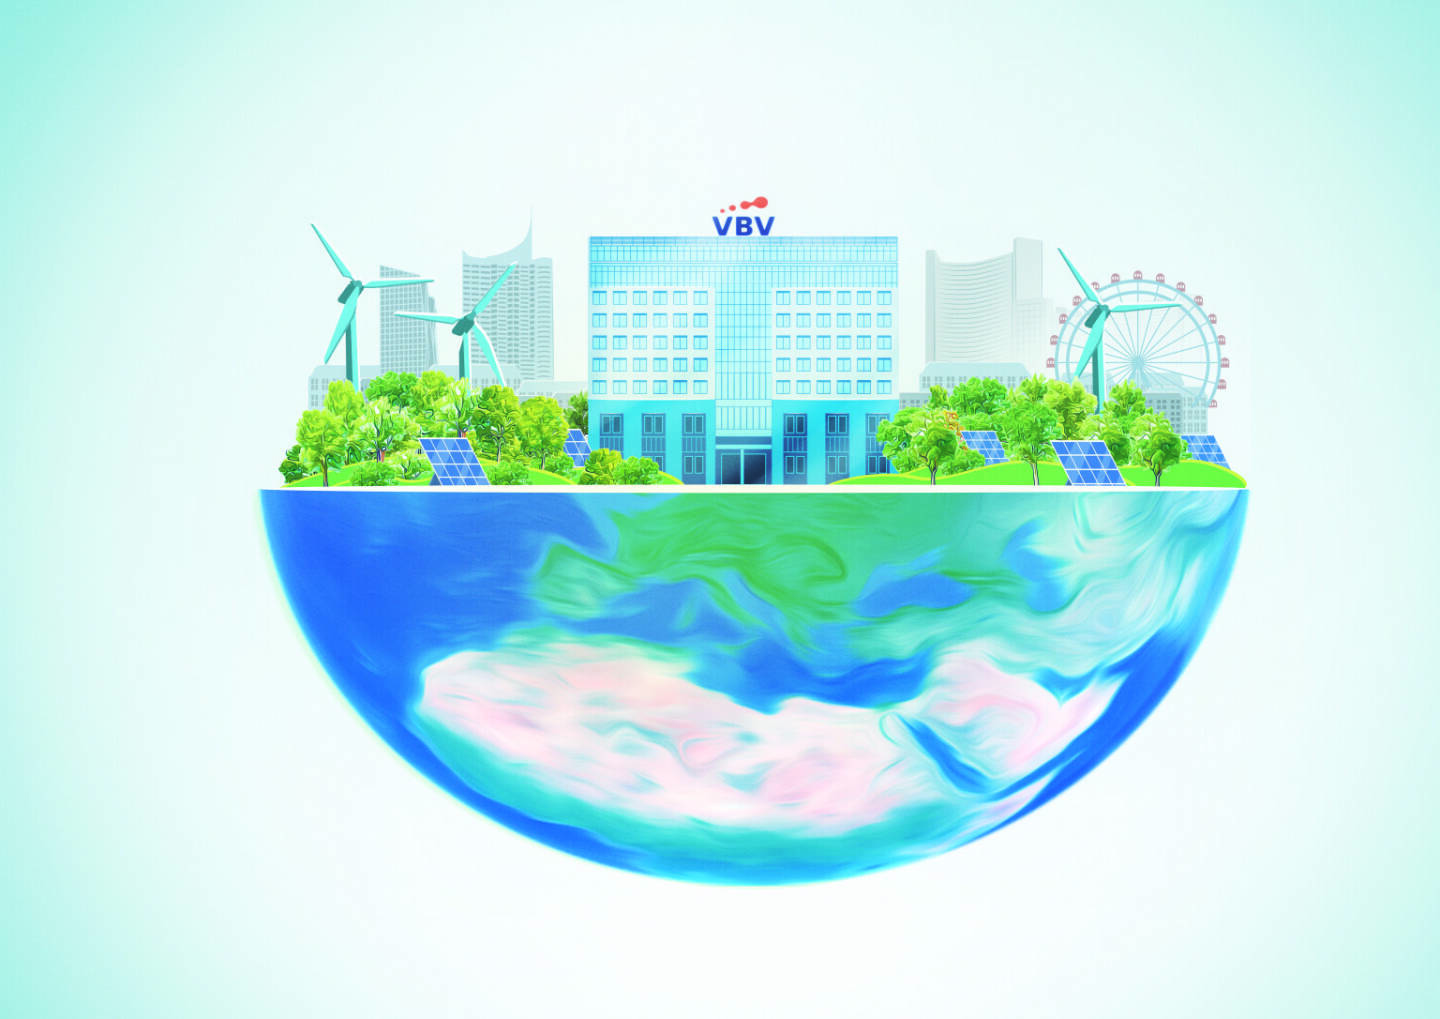 VBV-Betriebliche Altersvorsorge AG: Kampf dem Klimawandel: VBV reduziert ihren CO2-Fußabdruck weiter, Der relative CO2-Fußabdruck der VBV-Pensionskasse sank im Jahresvergleich 2019/2020 um 49 Tonnen auf nun 140 Tonnen CO2 je investierter Million Euro. Fotocredit:VBV / Beniamin Urbanek